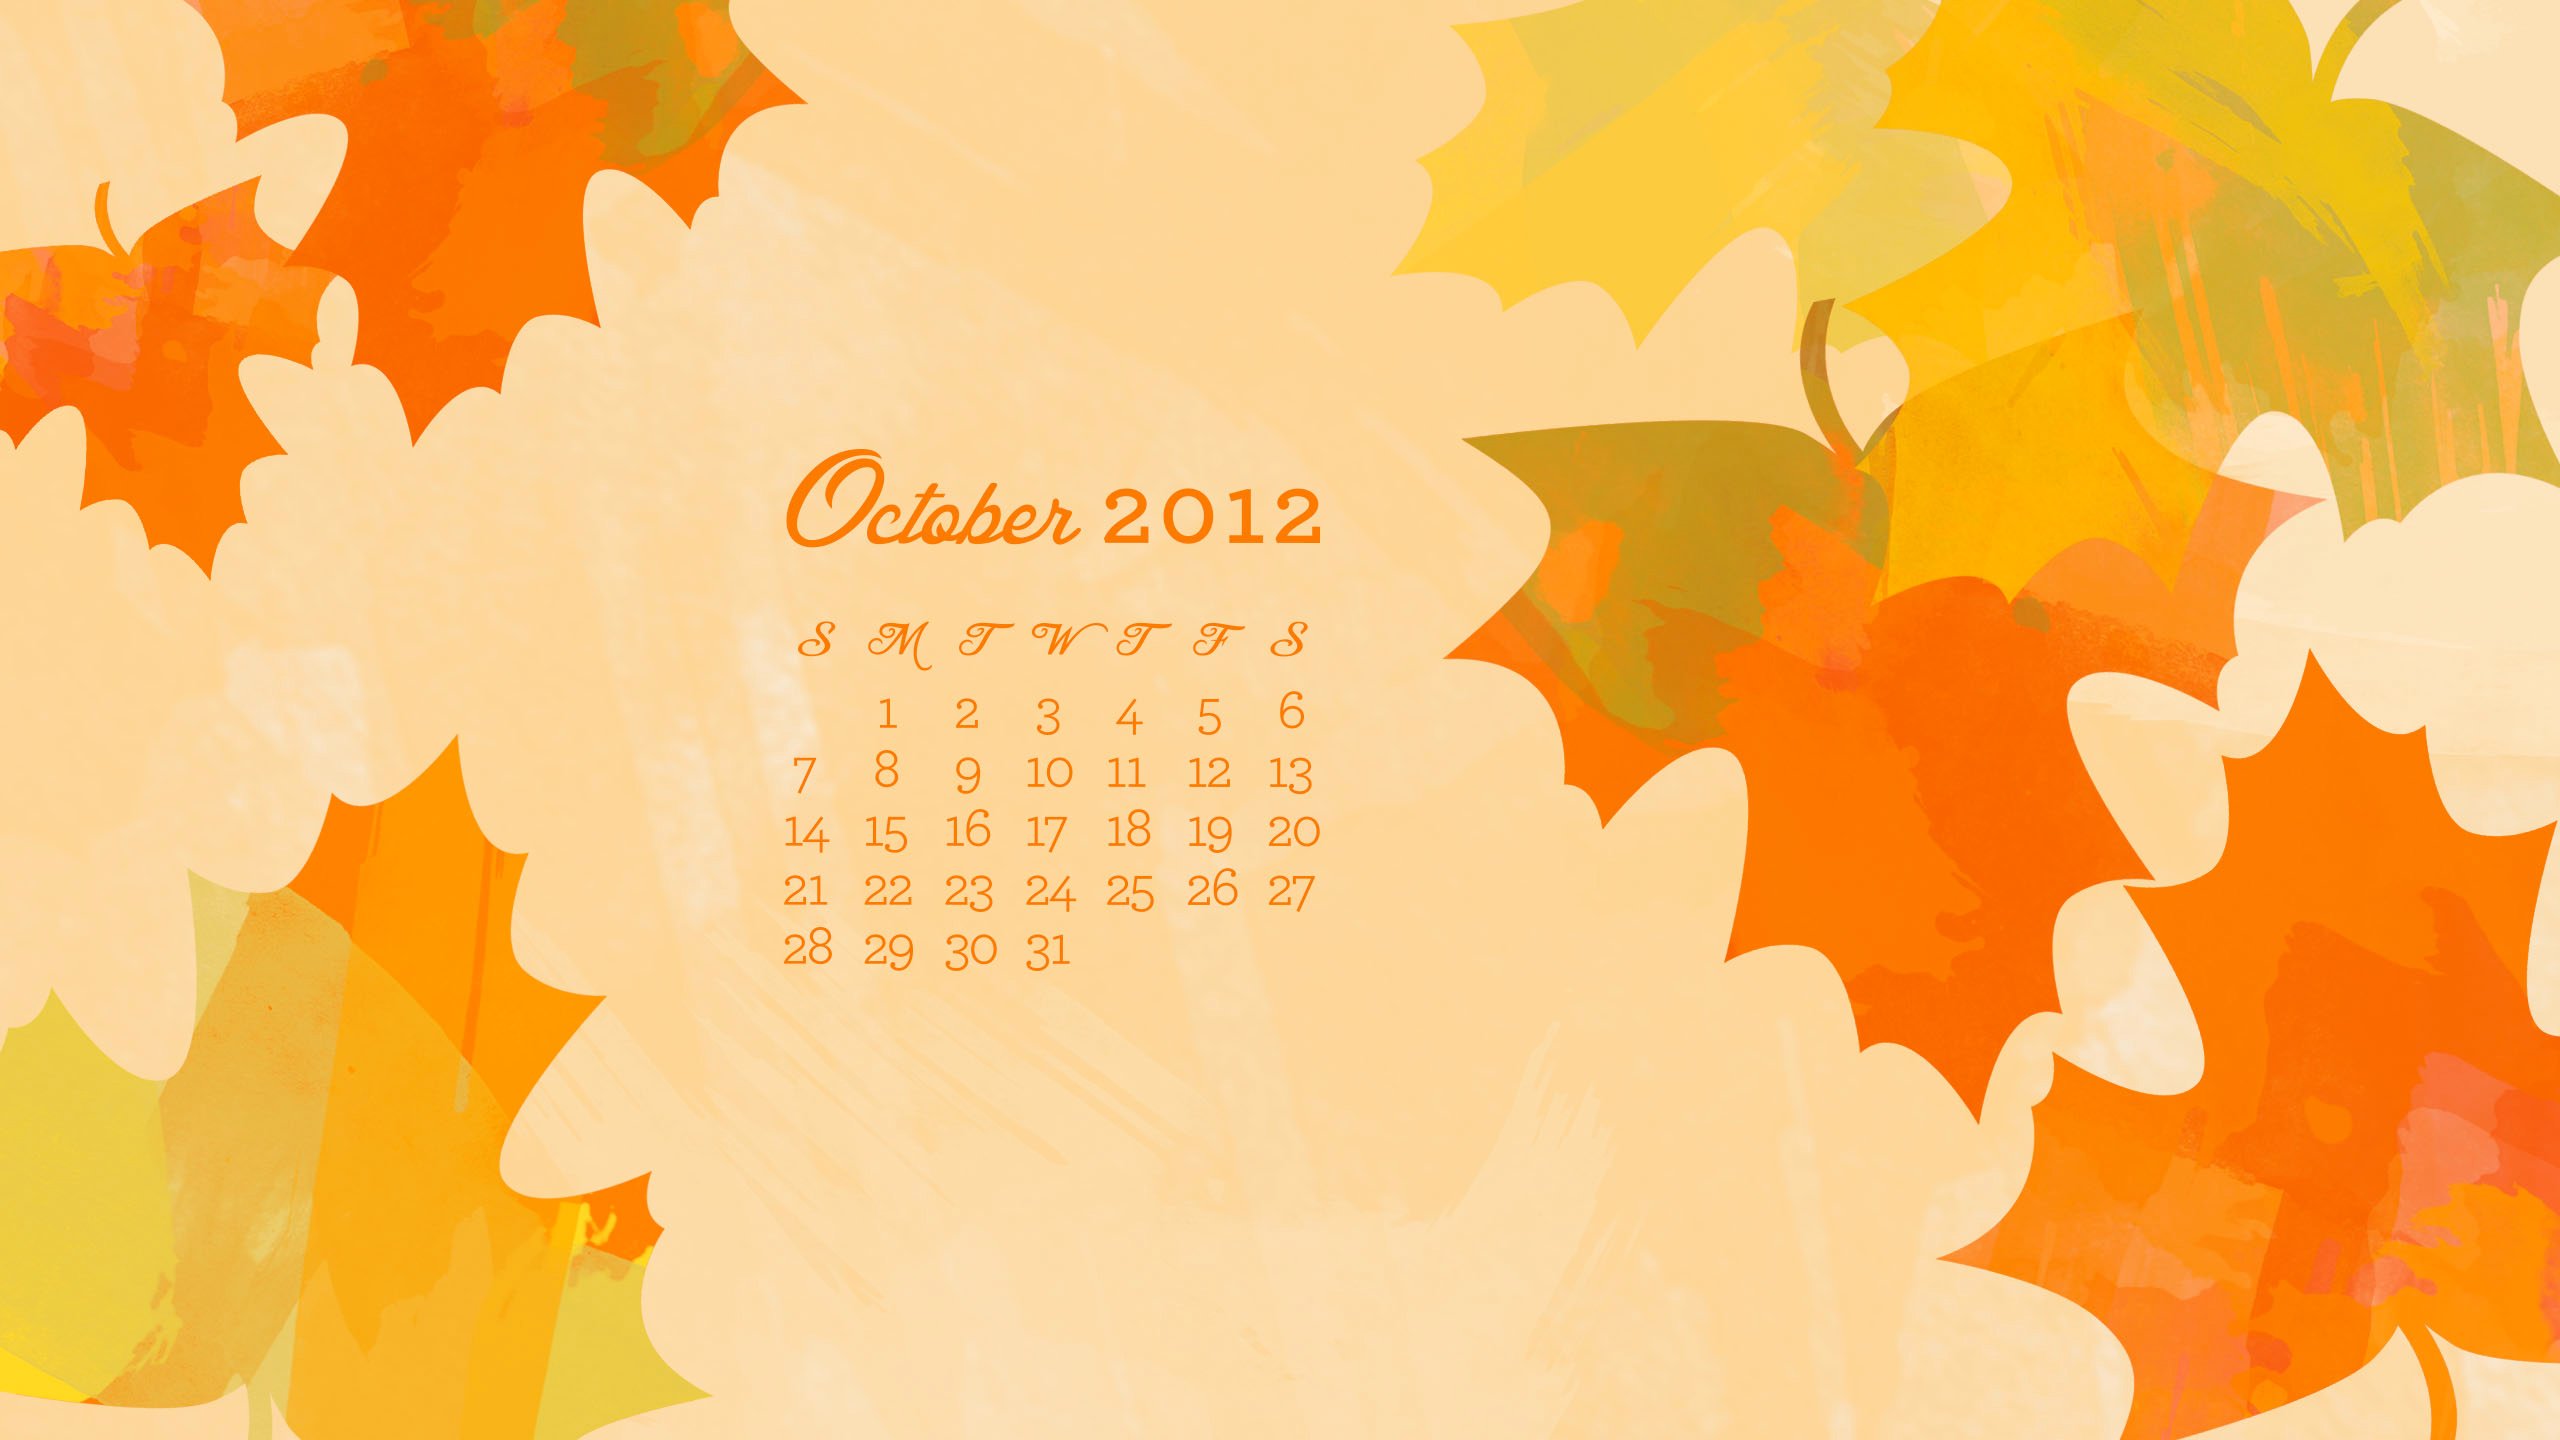 October 2012 Desktop iPhone iPad Calendar Wallpaper   Sarah Hearts 2560x1440